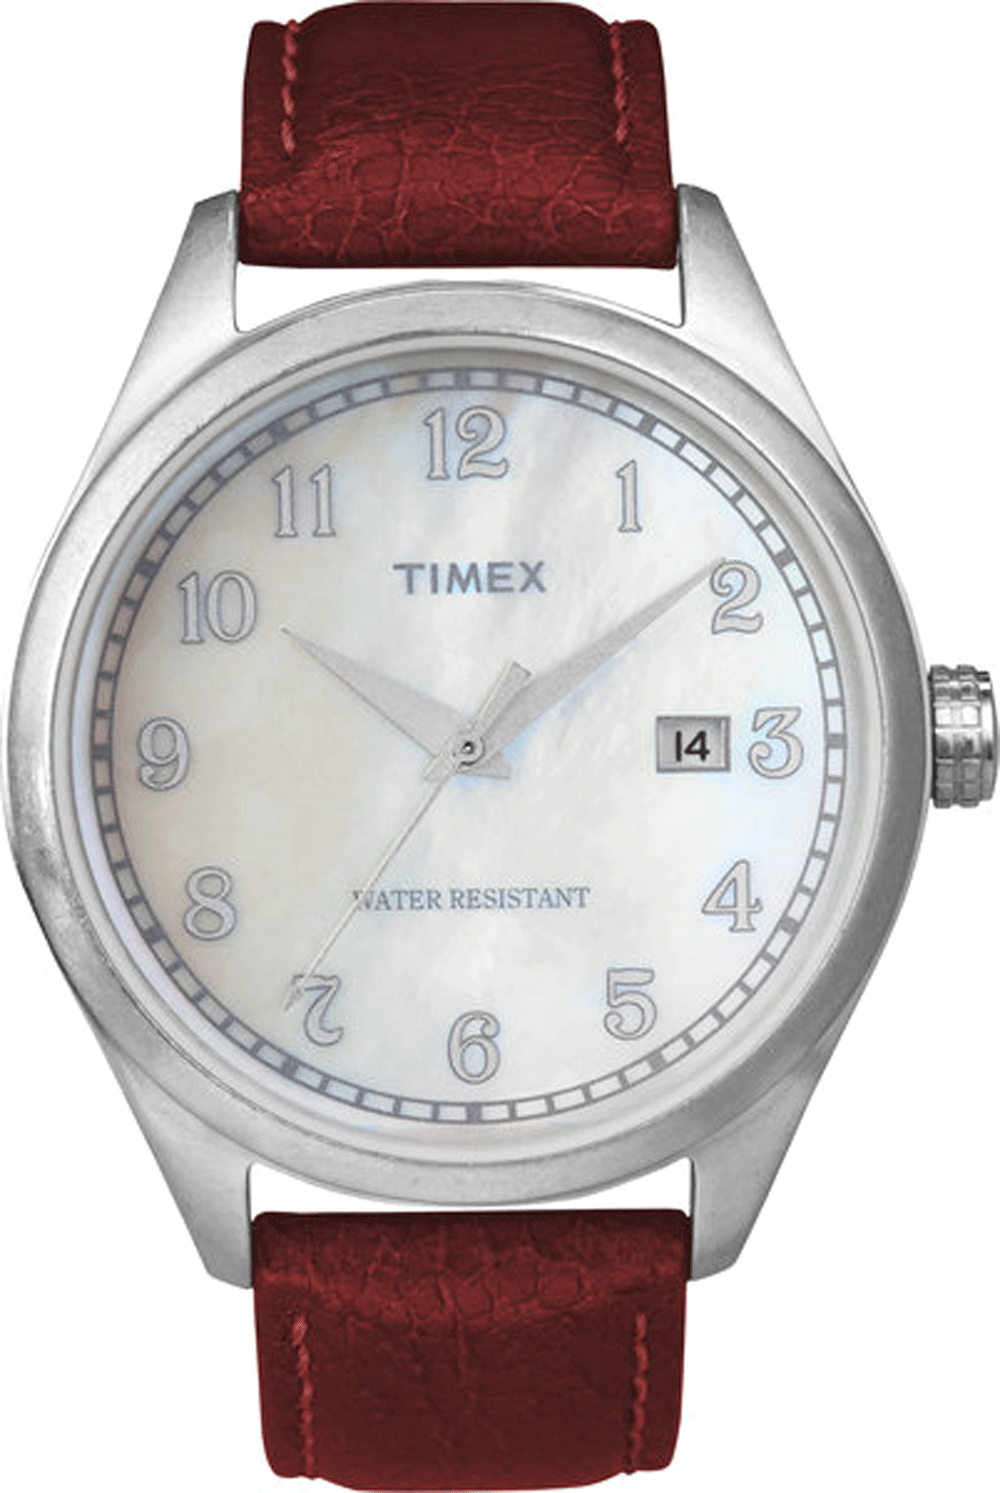 Home В» Watches В» Sports Watches В» Timex Watches В» Timex